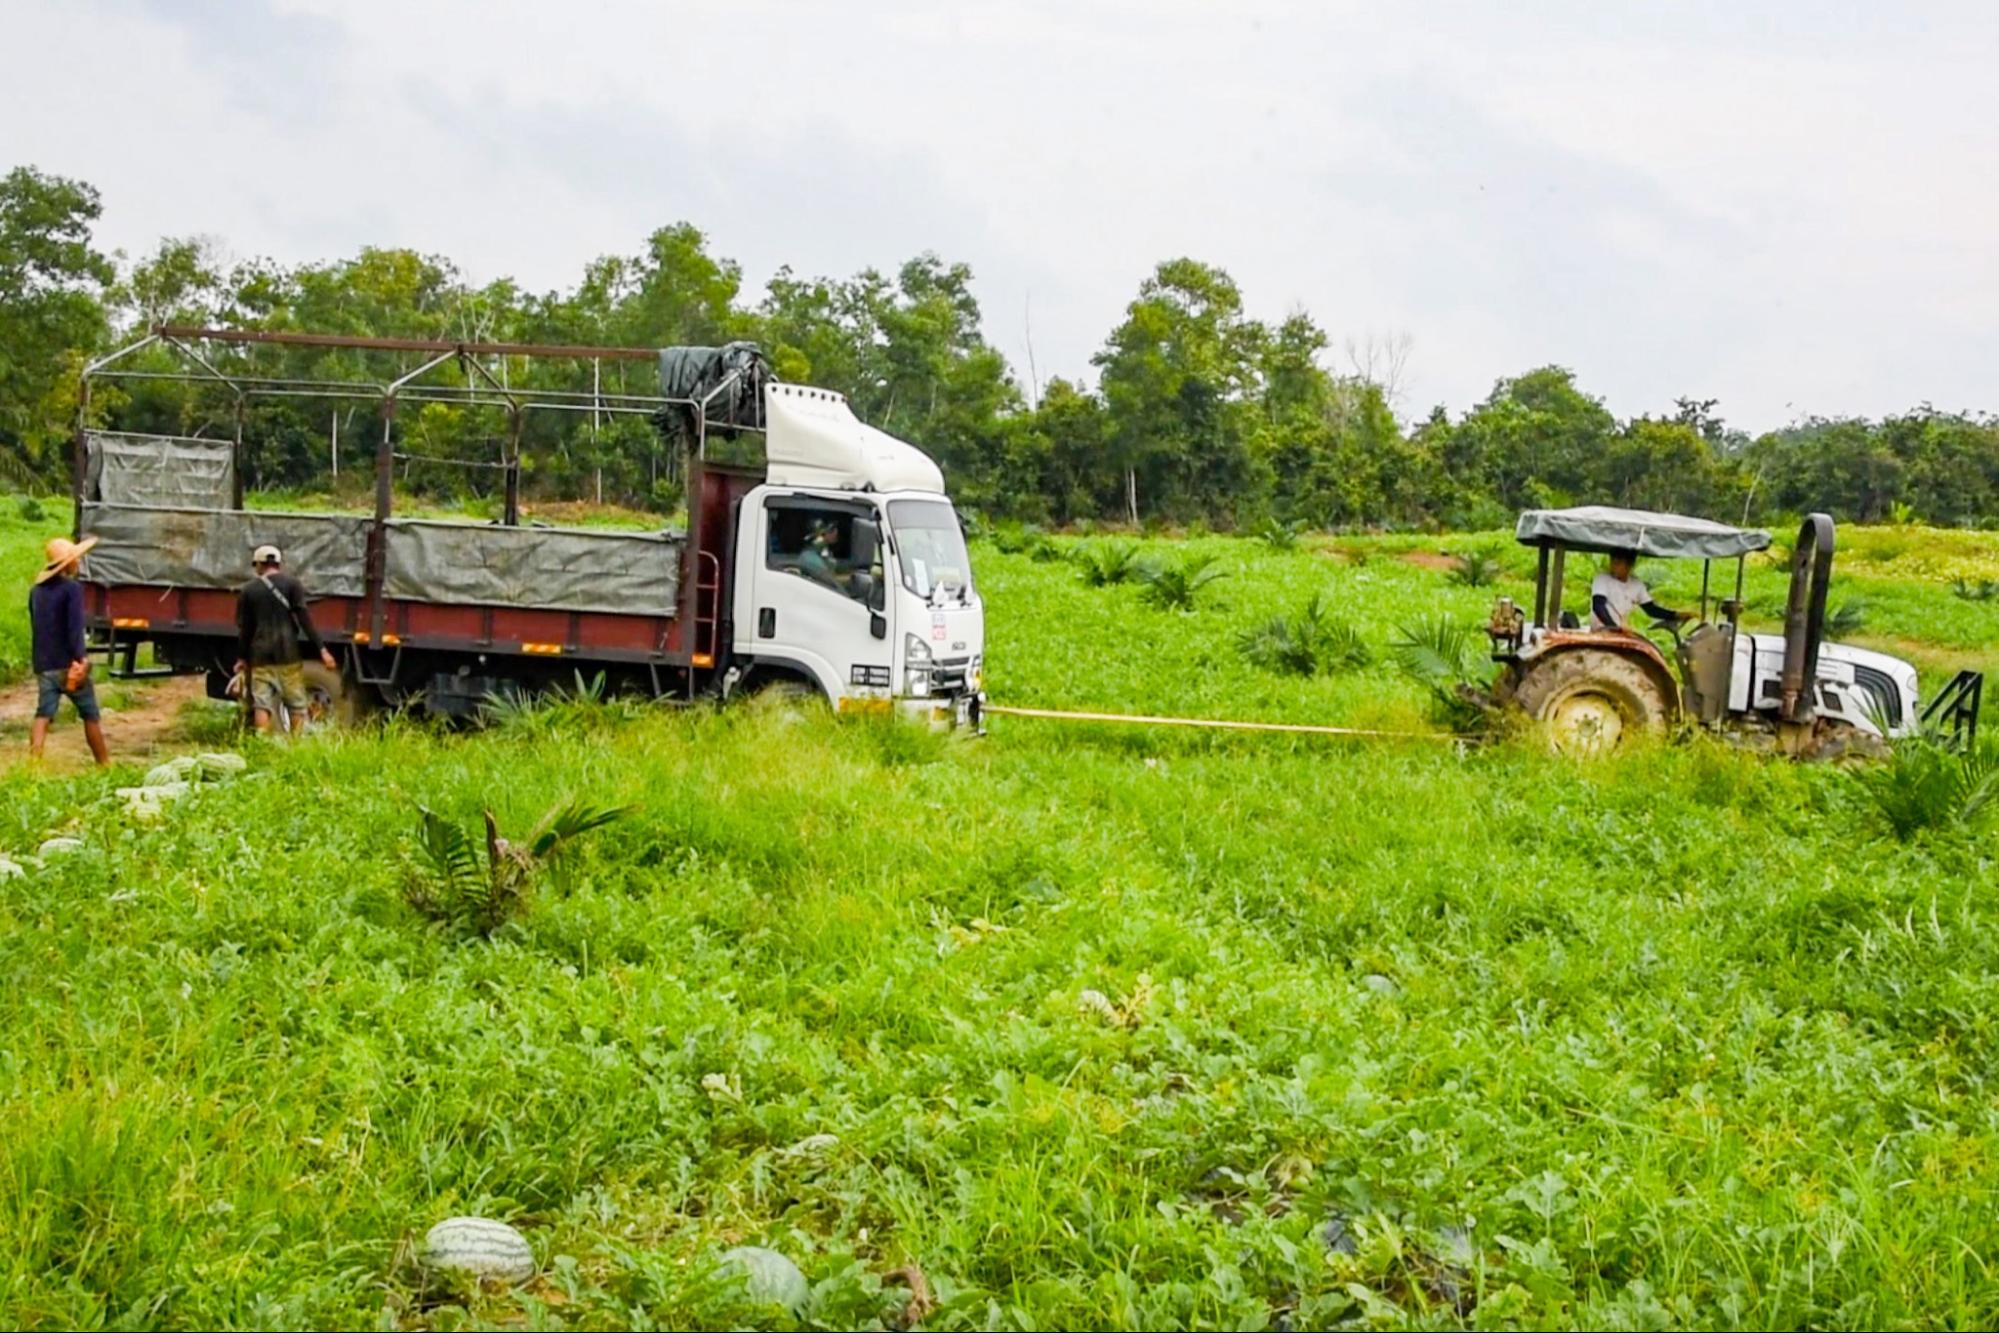 melon farming in malaysia - watermelon farm with truck